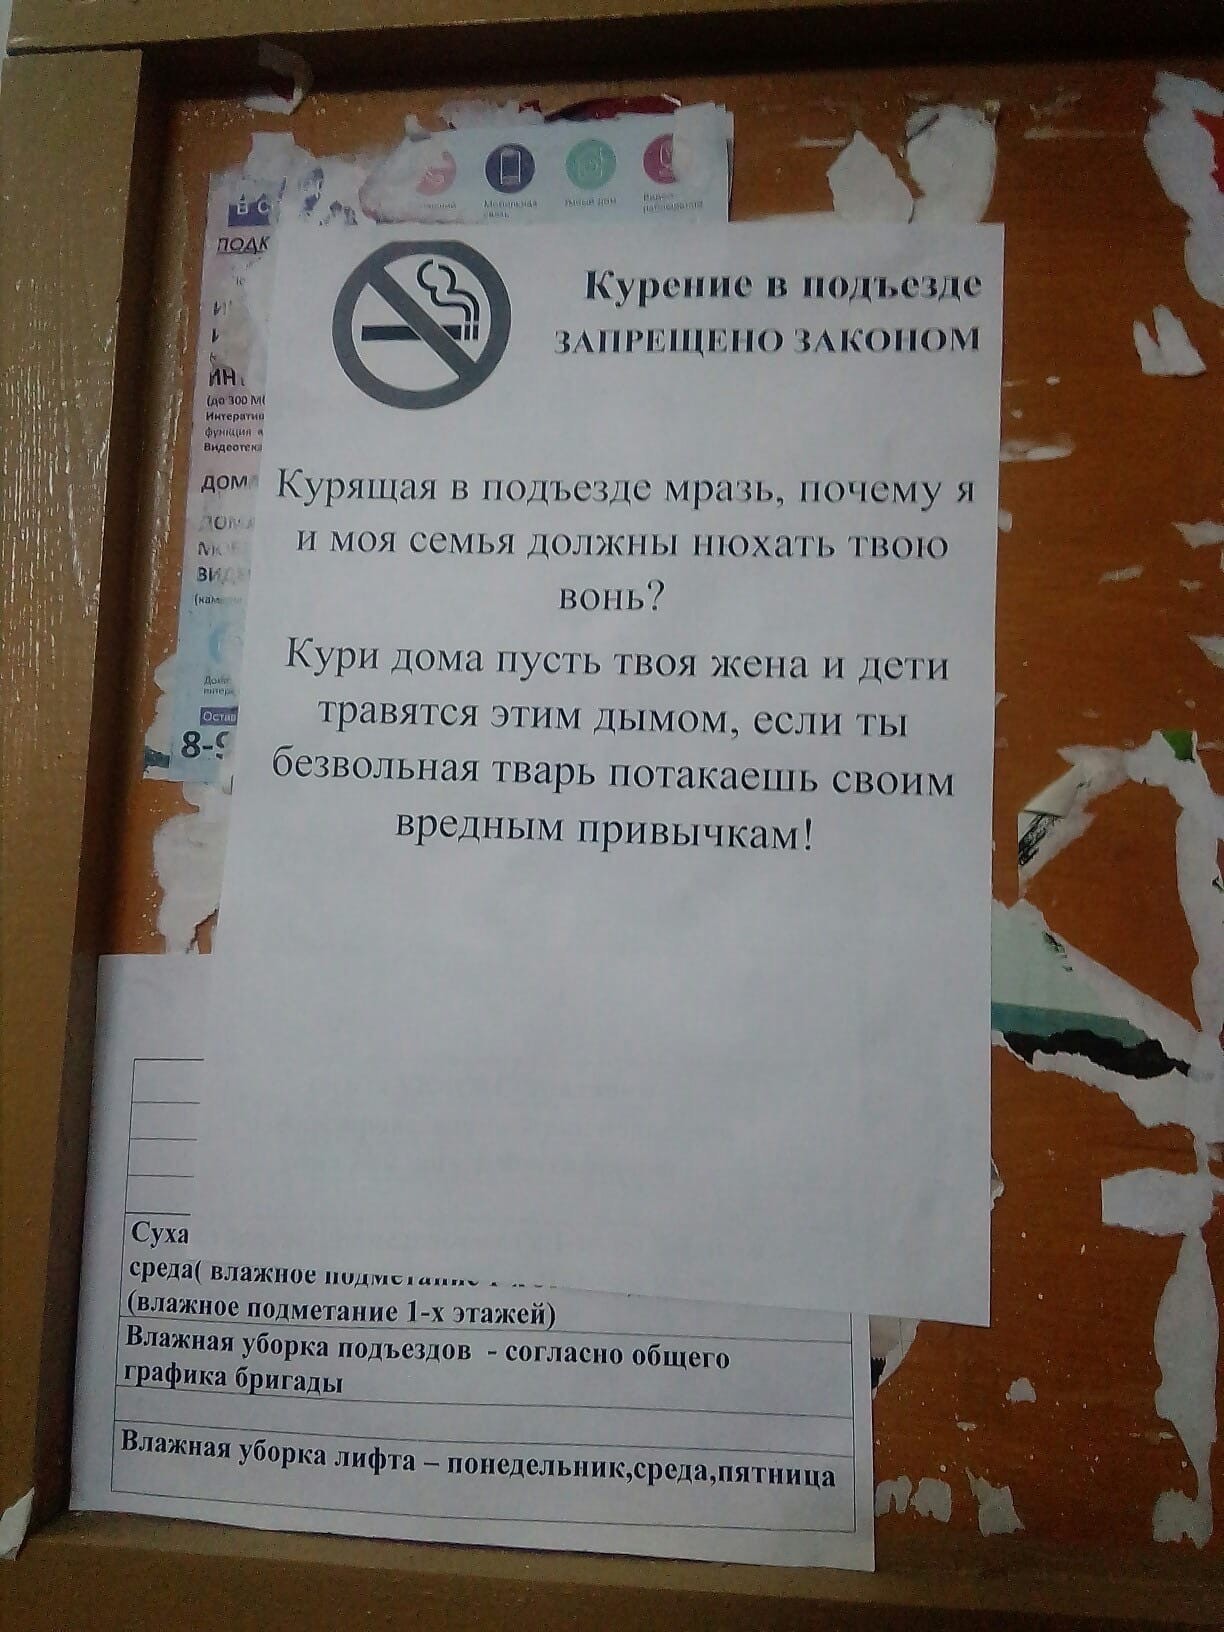 Сосед снизу курит. Объявления в подъезде. Объявление для курильщиков в подъезде. Объявление не курить в подъезде. Объявление для курящих в подъезде.